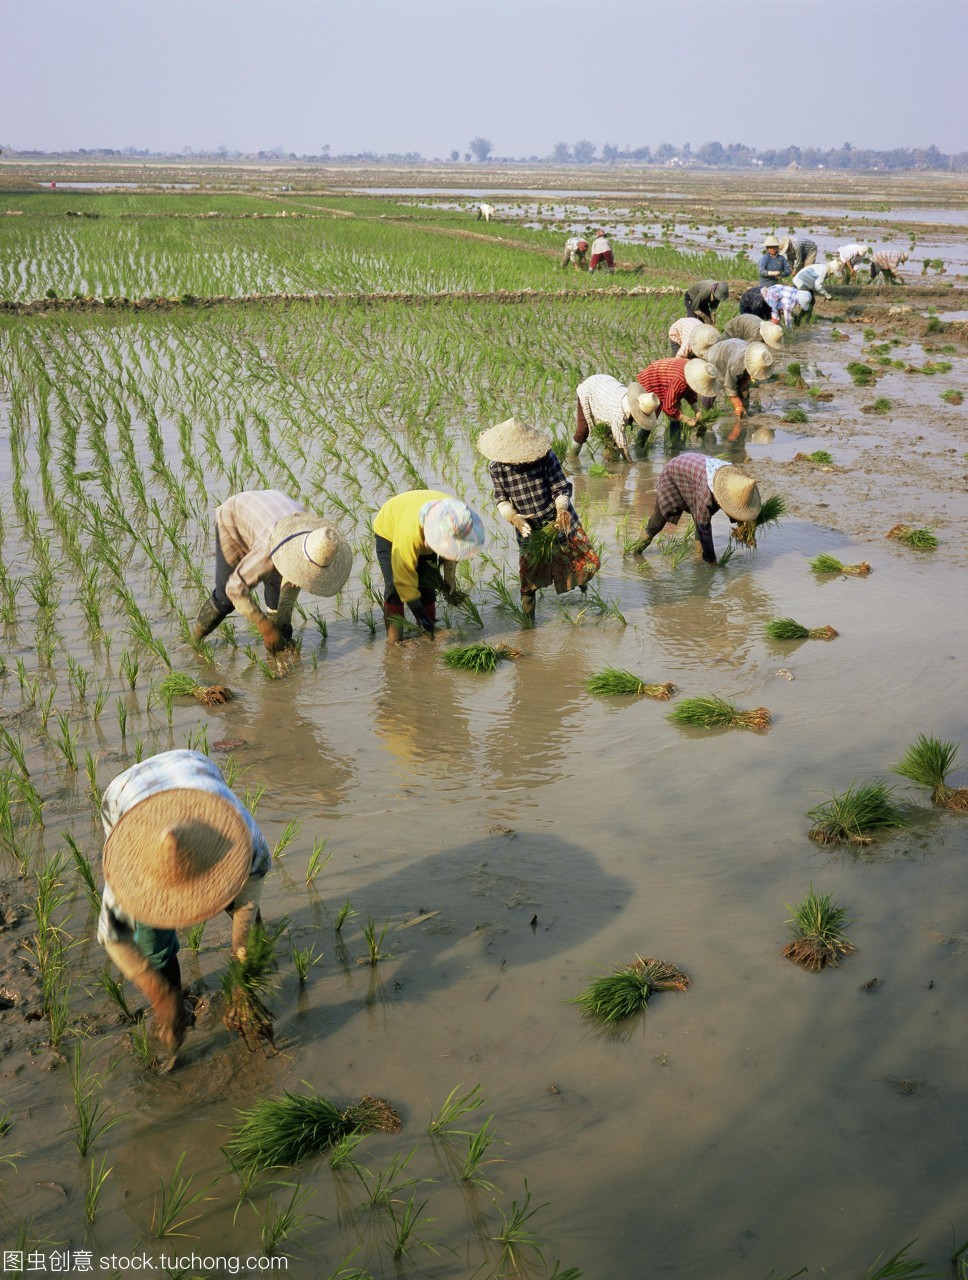 在种植水稻的农民种植水稻。拍摄在梅塞泰国清迈。